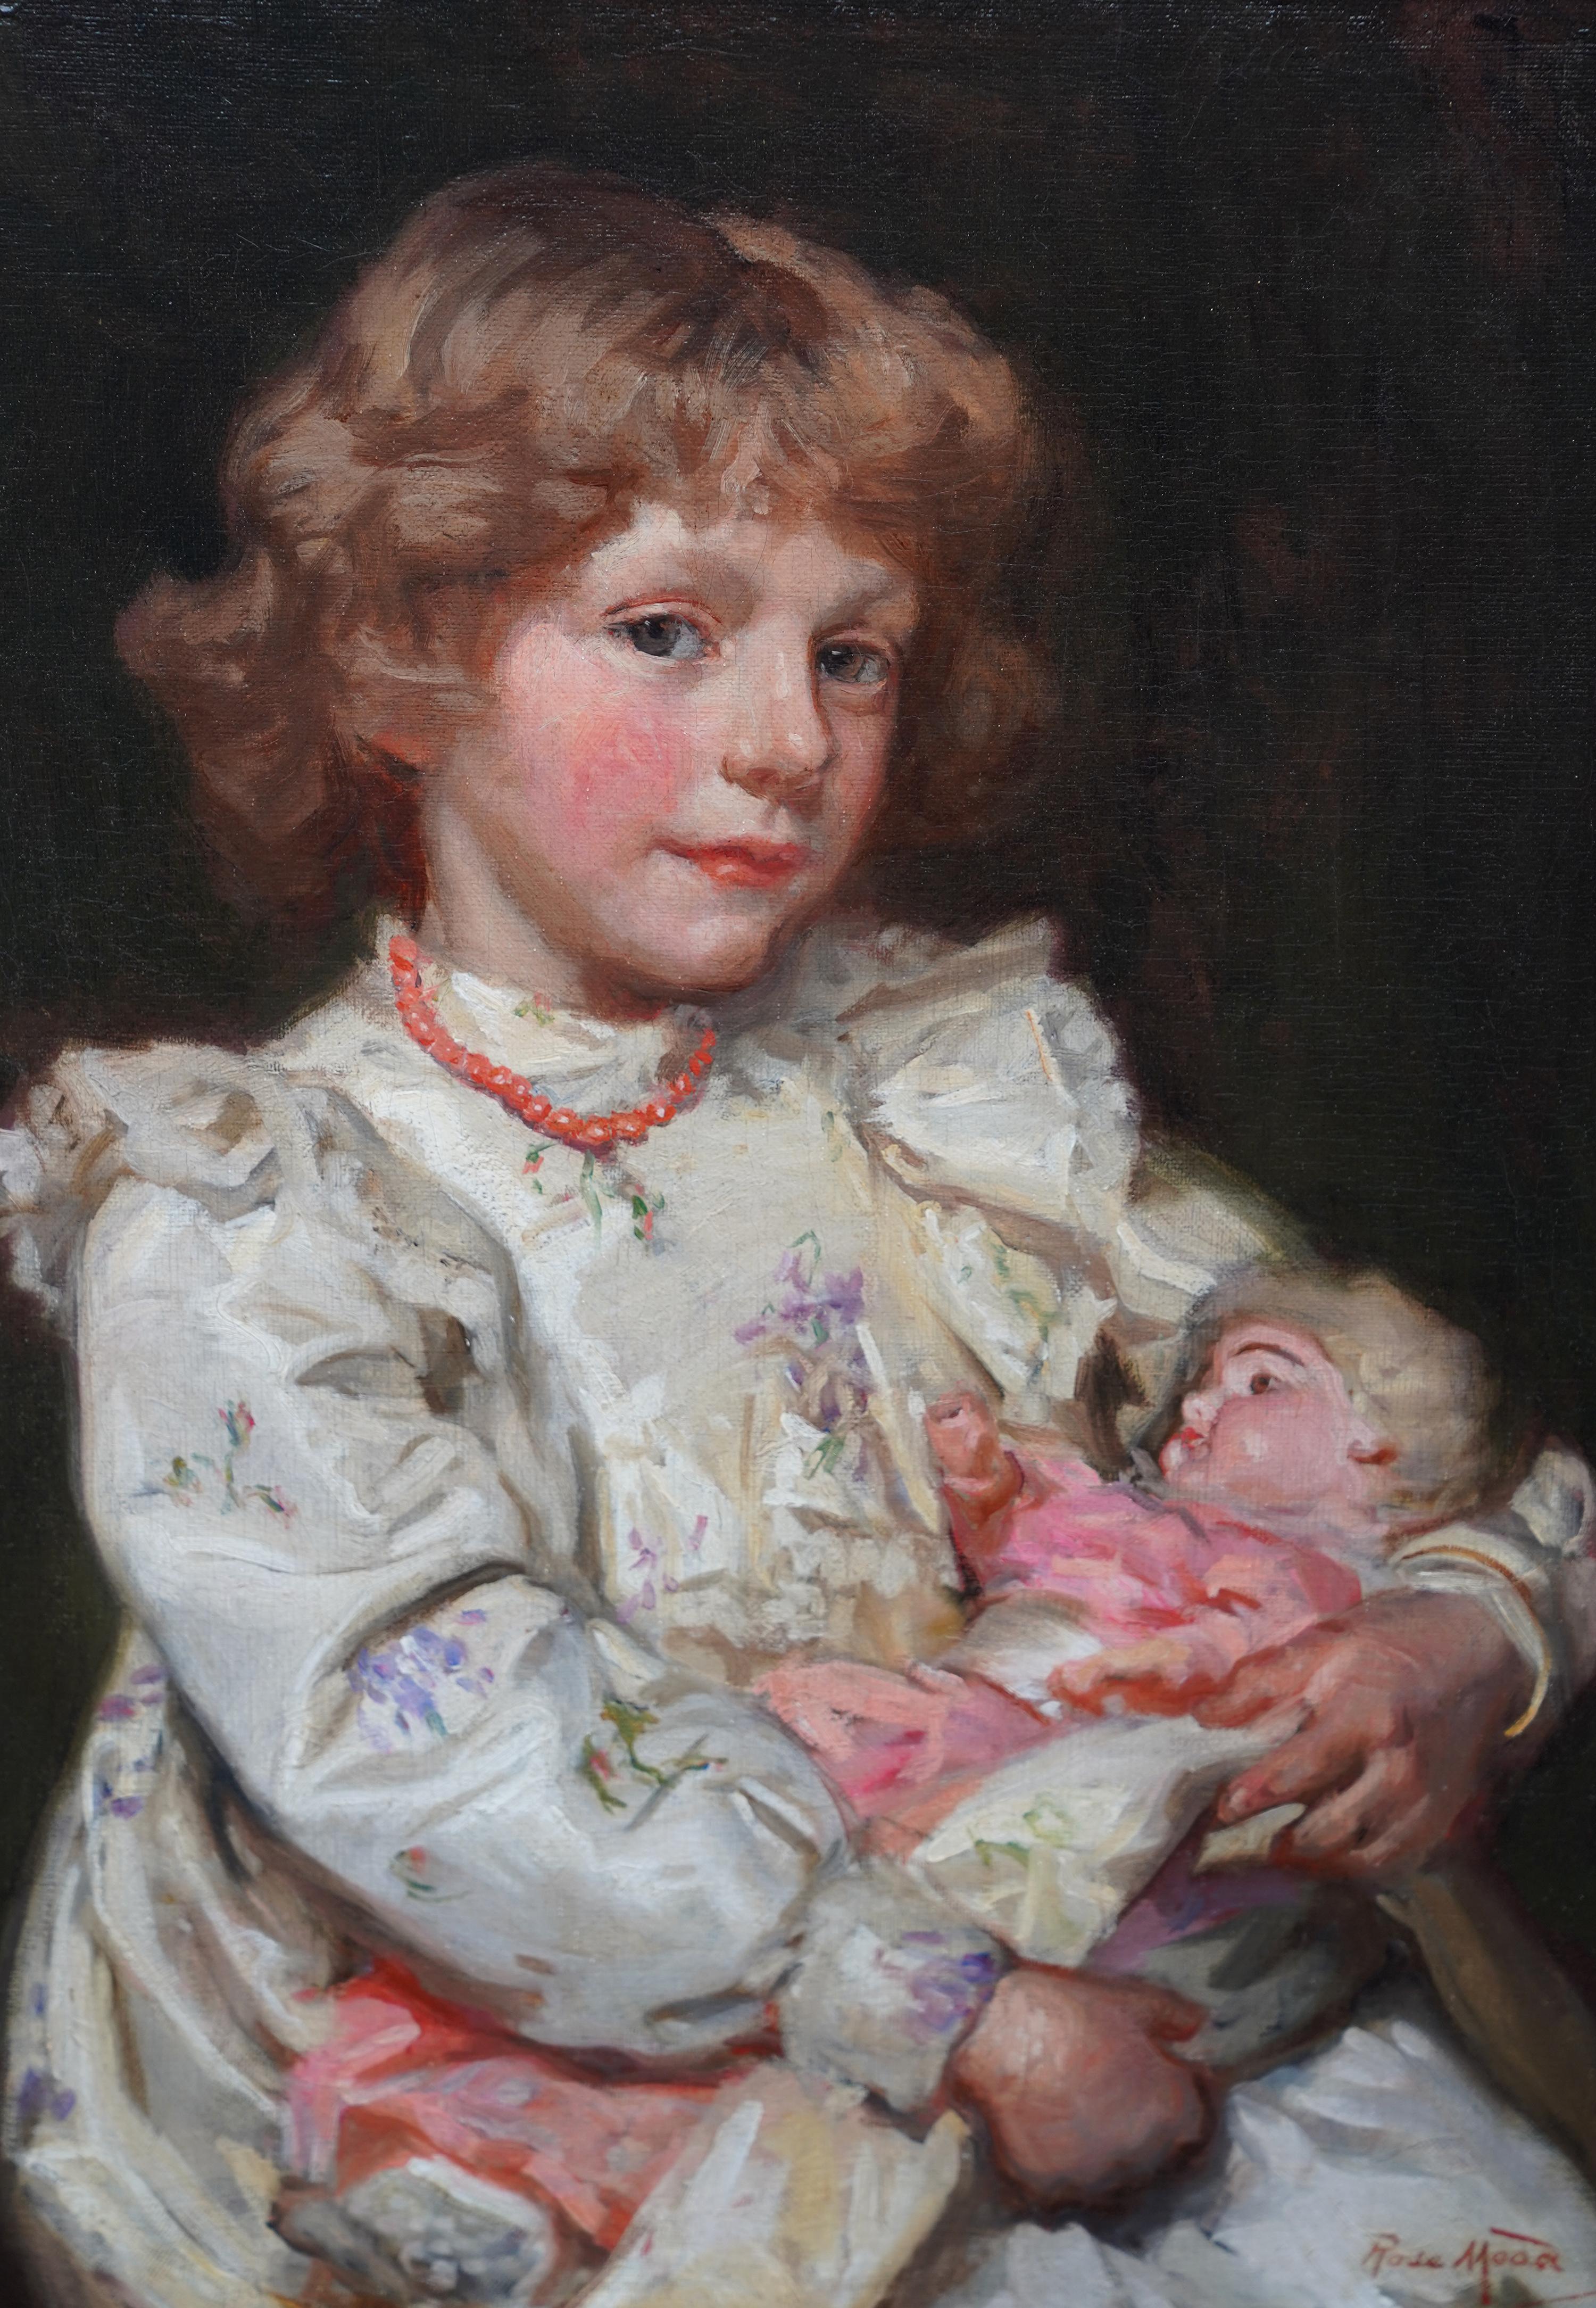 Dieses prächtige britische Porträt-Ölgemälde aus der Edwardianischen Zeit stammt von der bekannten Künstlerin Emma Rose Mead, auch bekannt als Rose Mead. Dieses atemberaubende Gemälde aus der Zeit um 1907 zeigt ein junges Mädchen mit einer Puppe auf